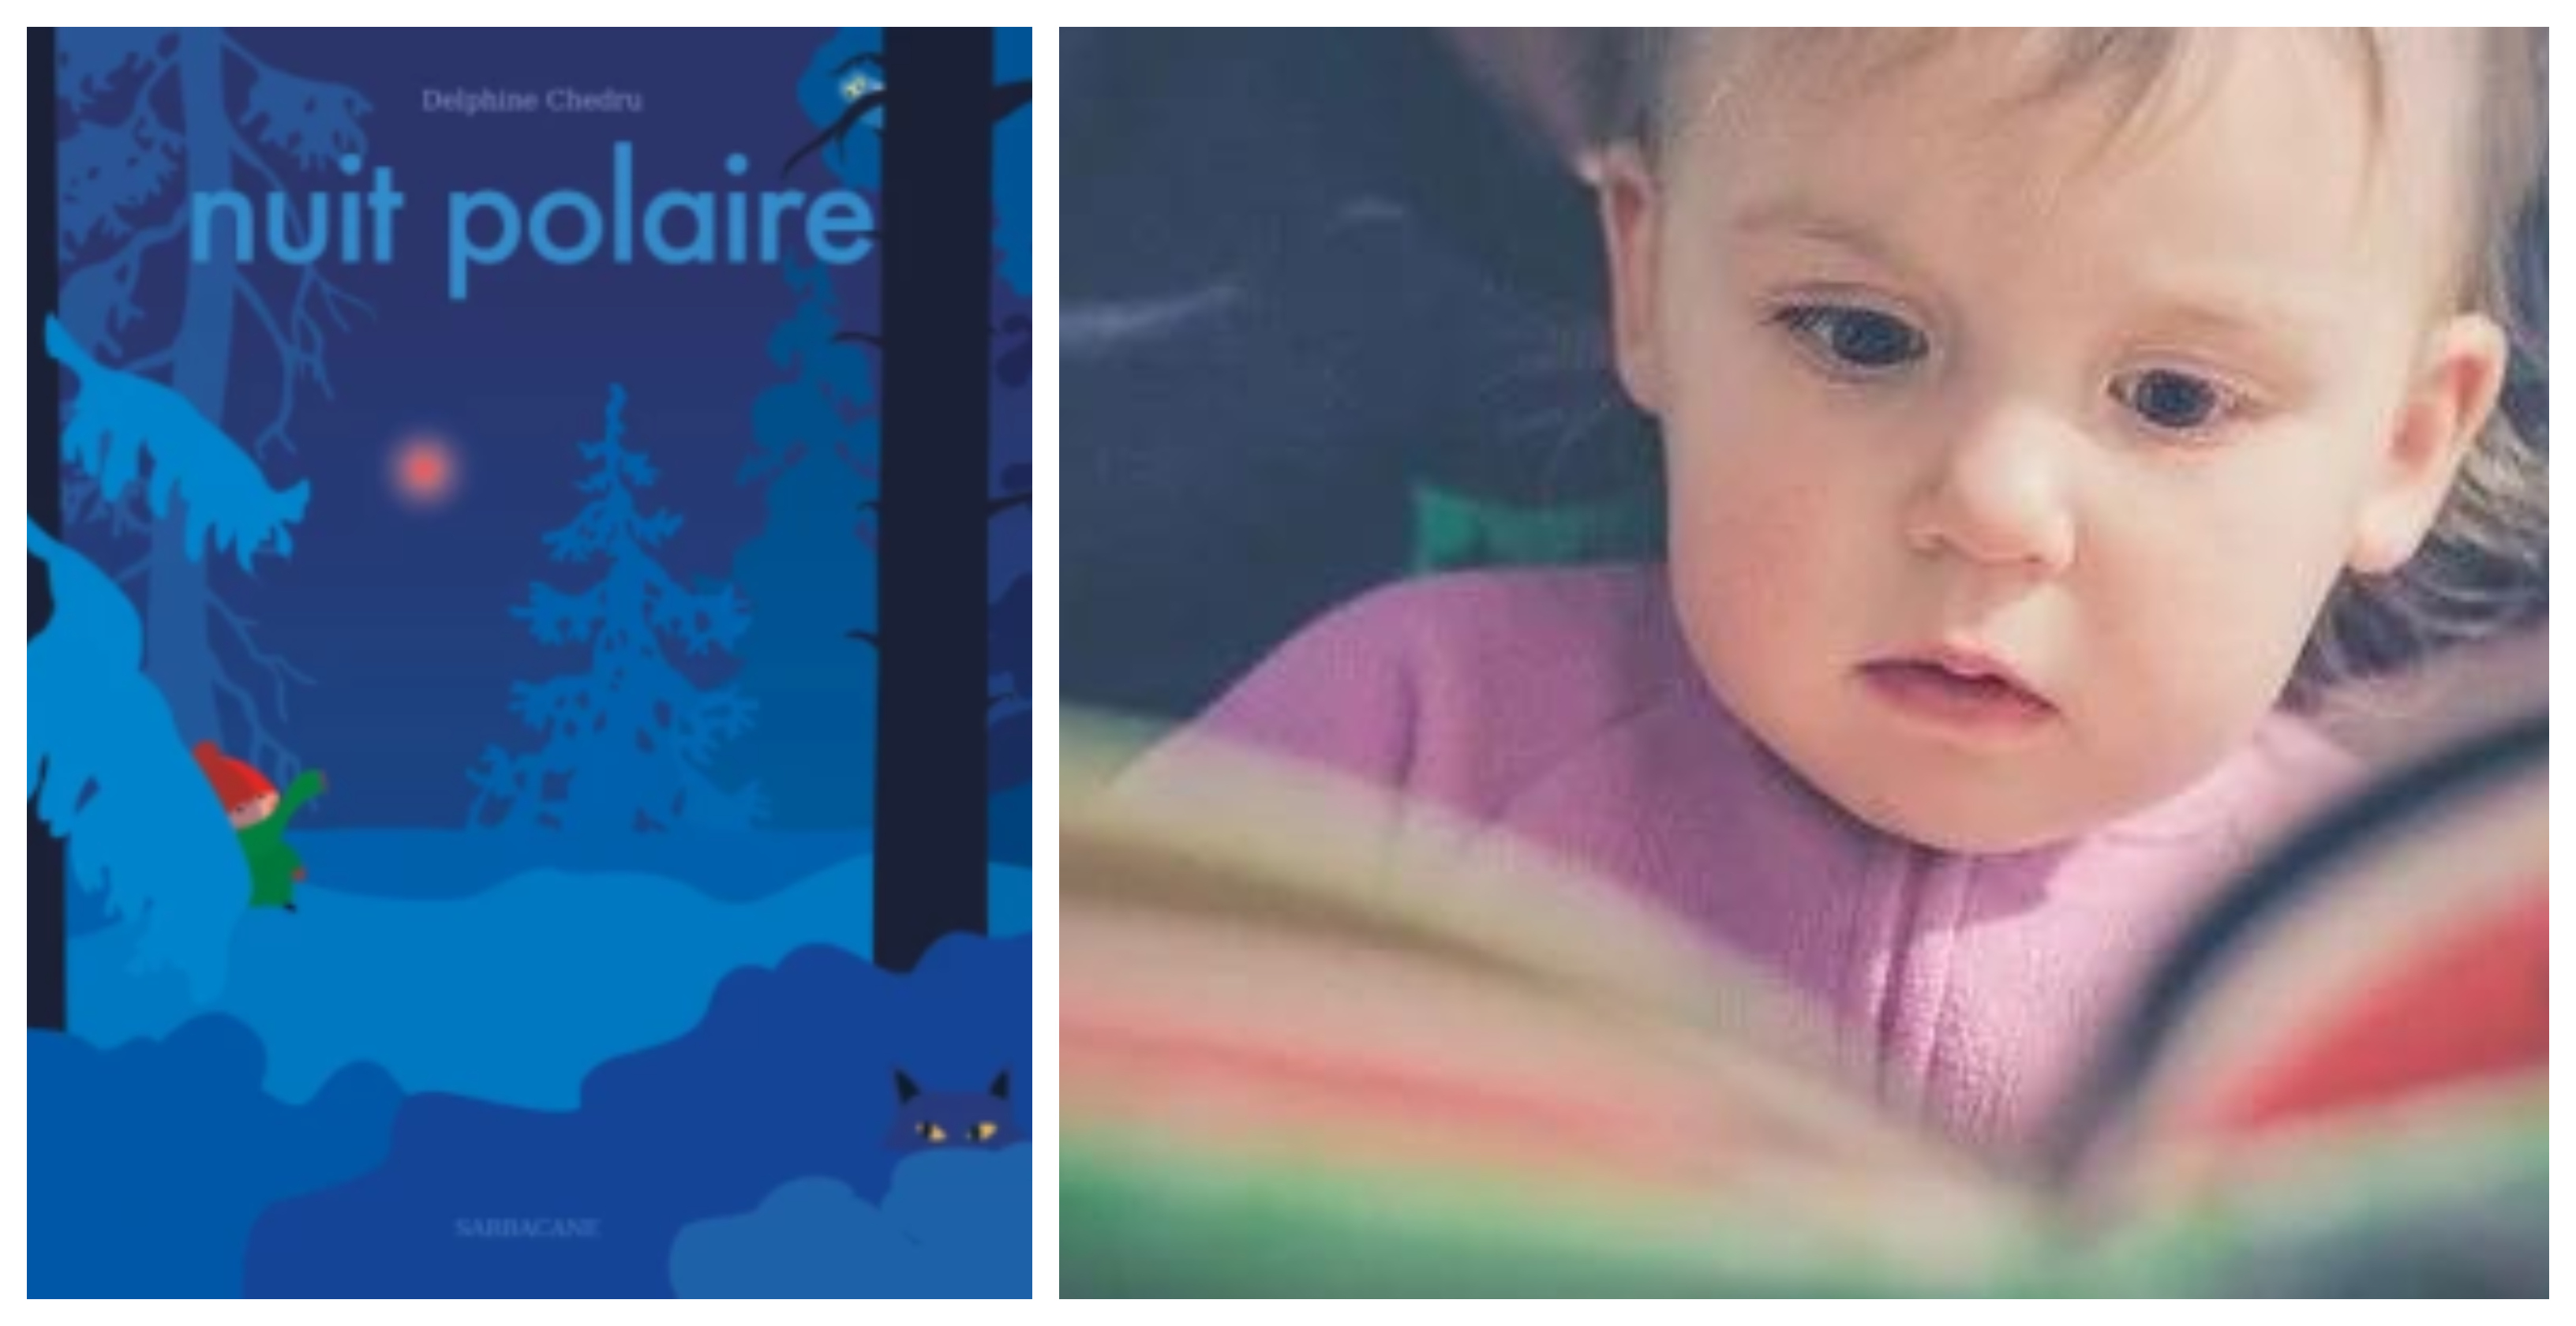 "Nuit polaire" Atelier lecture parent-enfant à la Citadelle de Brouage